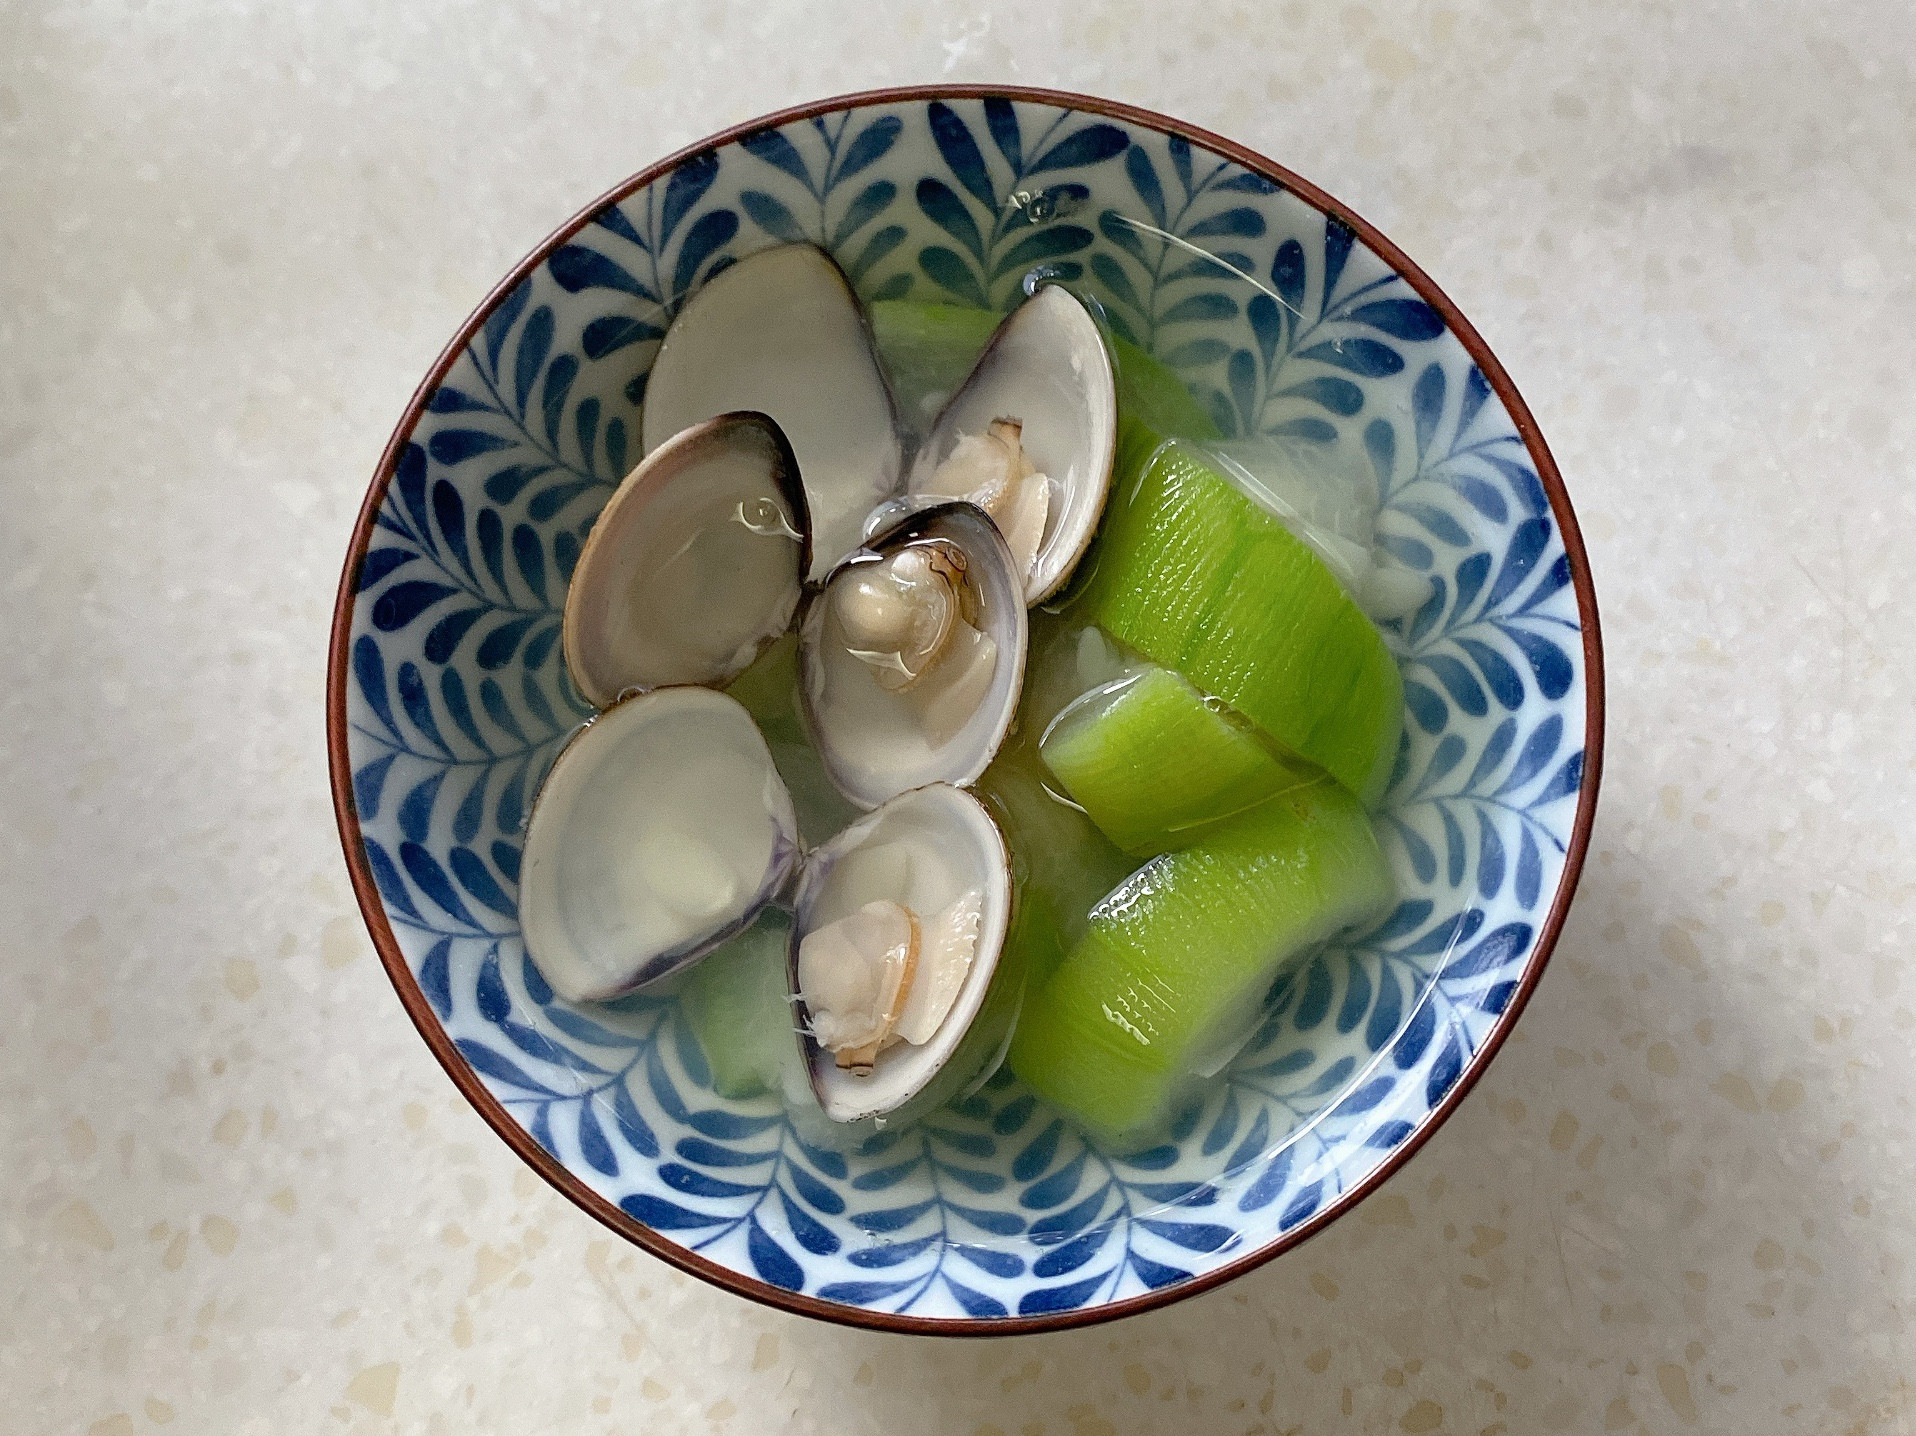 絲瓜蛤蜊湯